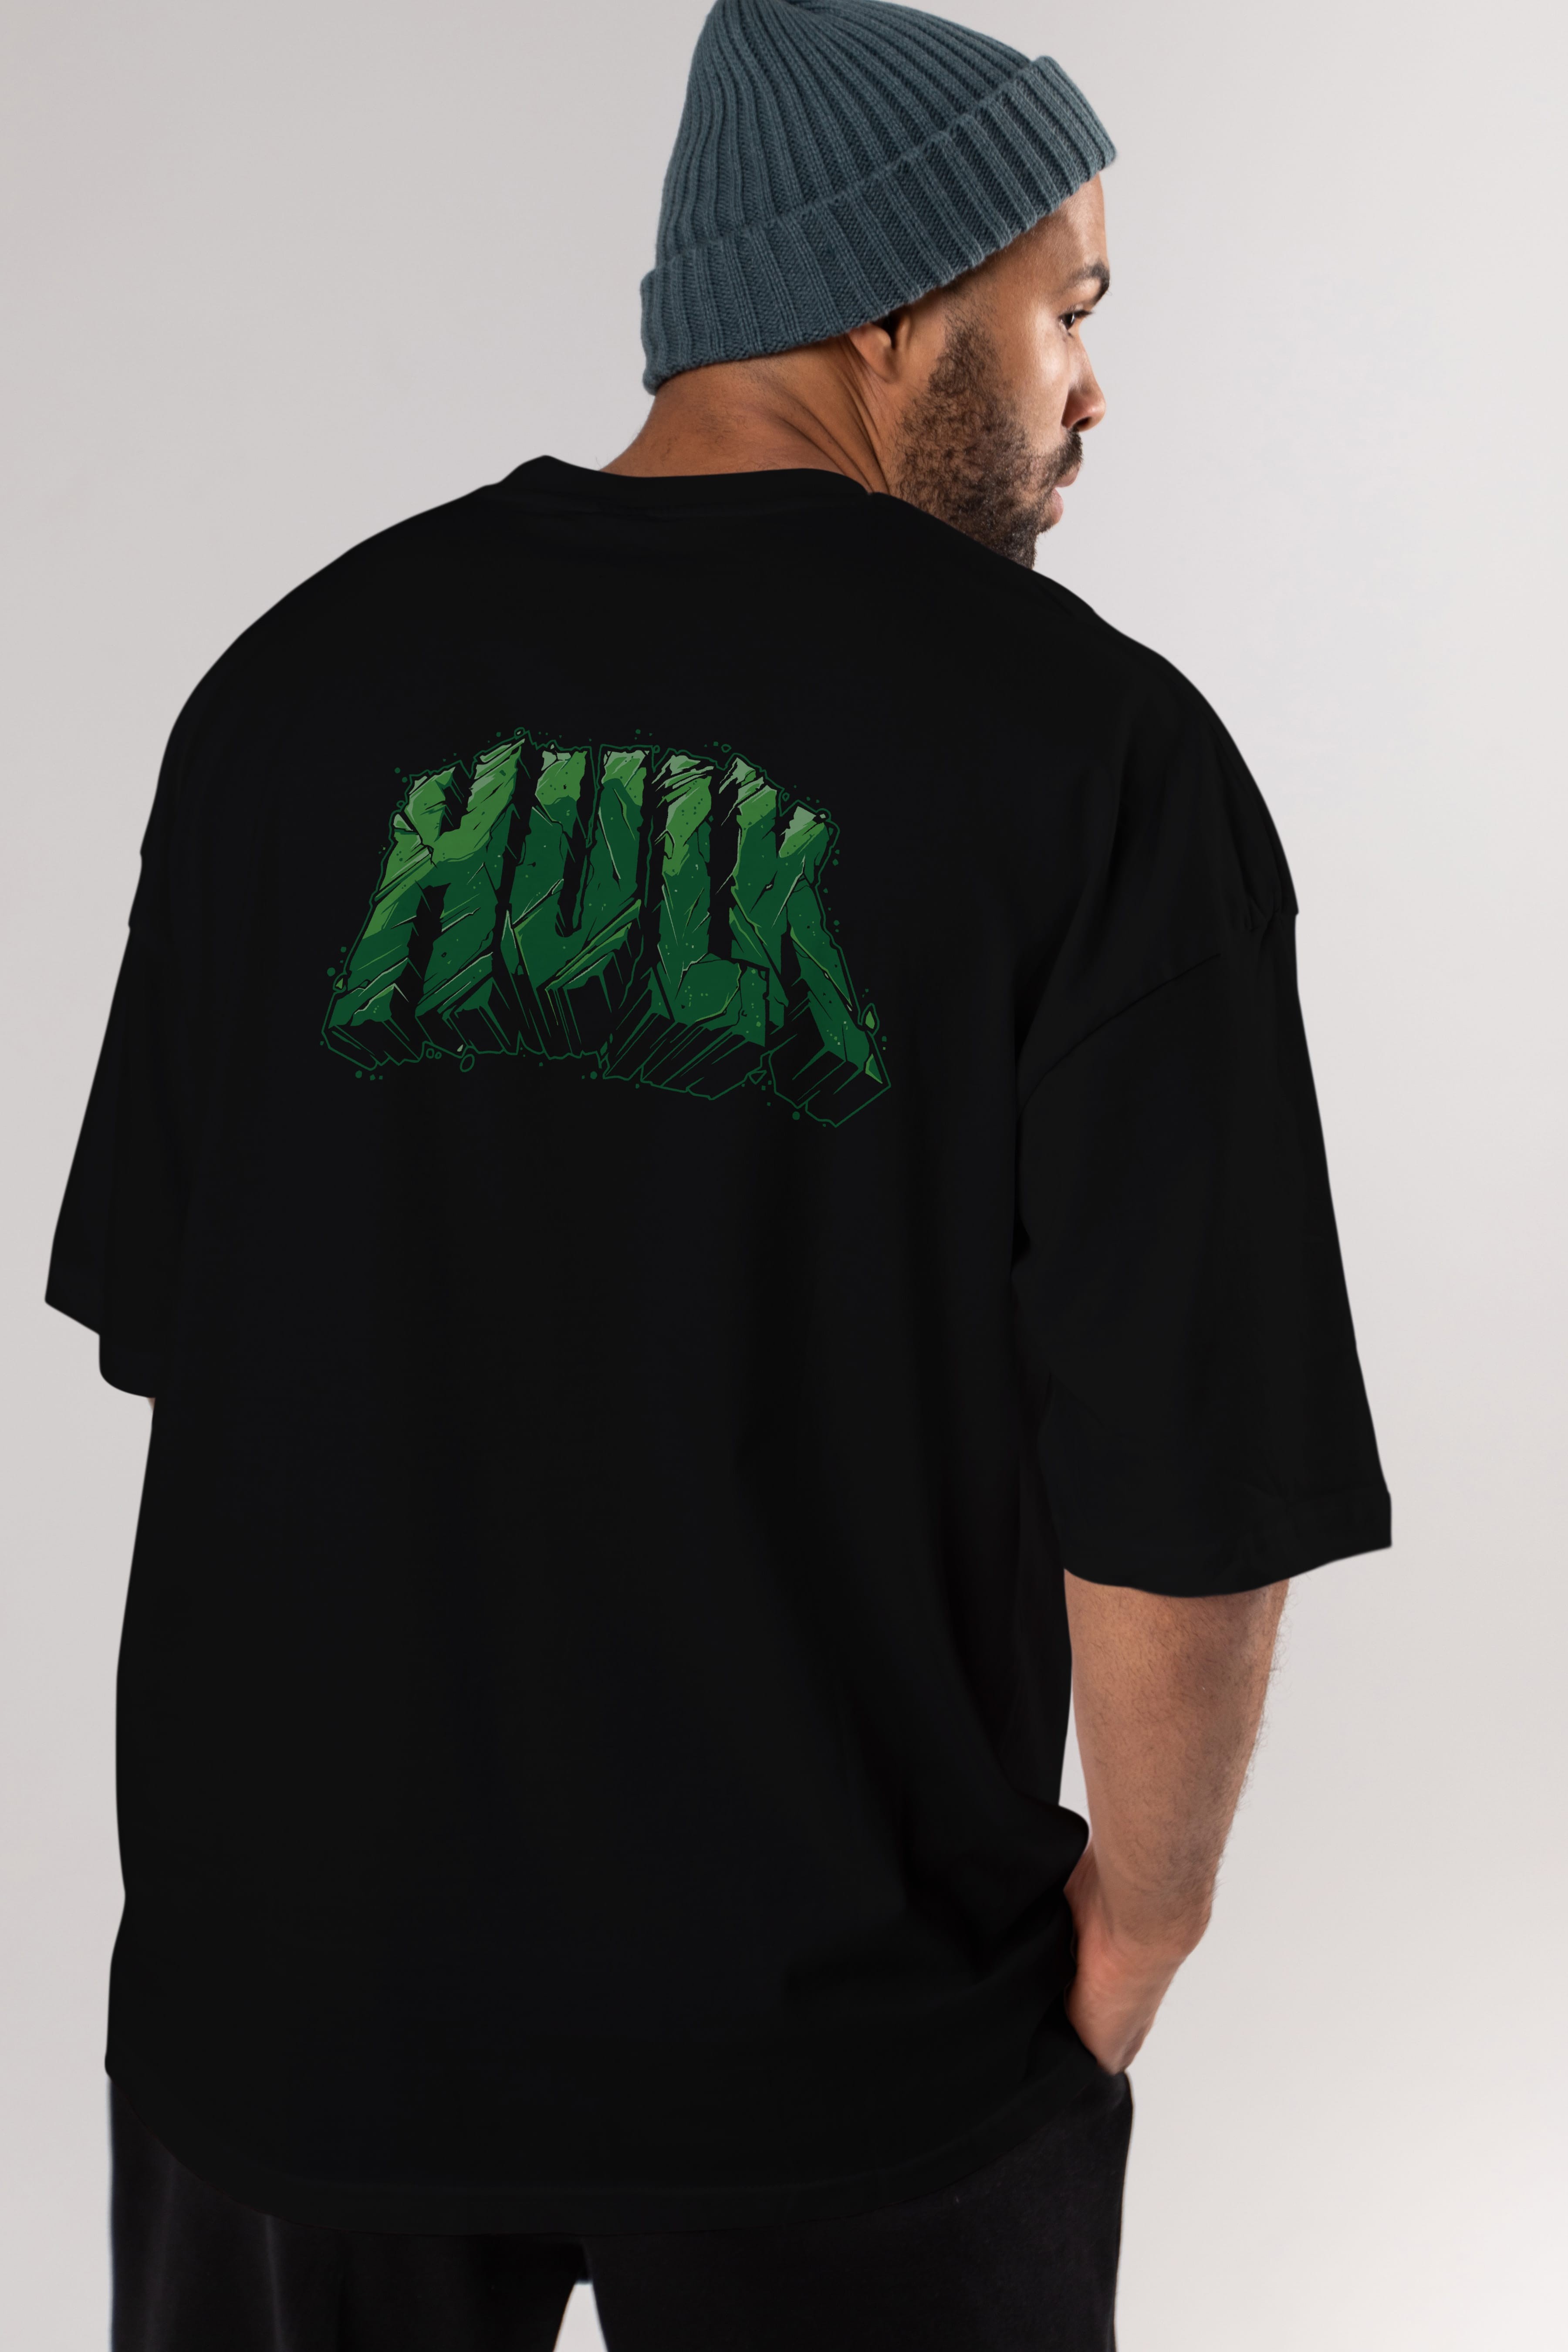 Hulk (14) Arka Baskılı Oversize t-shirt Erkek Kadın Unisex %100 Pamuk Bisiklet Yaka tişort